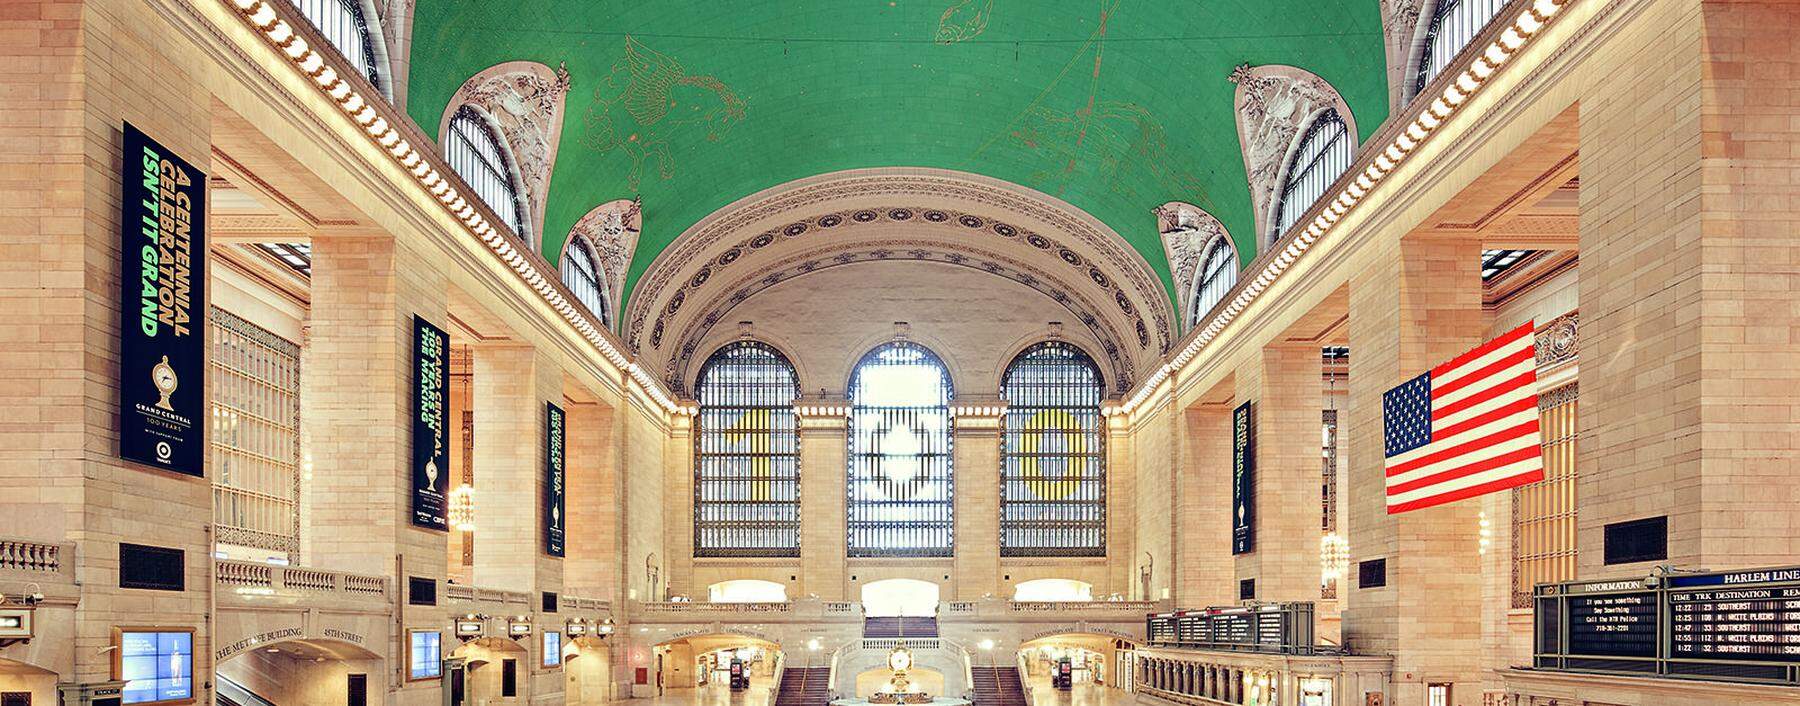 Kathedrale der Verkehrskultur: Terminal der Grand Central Station in New York. 